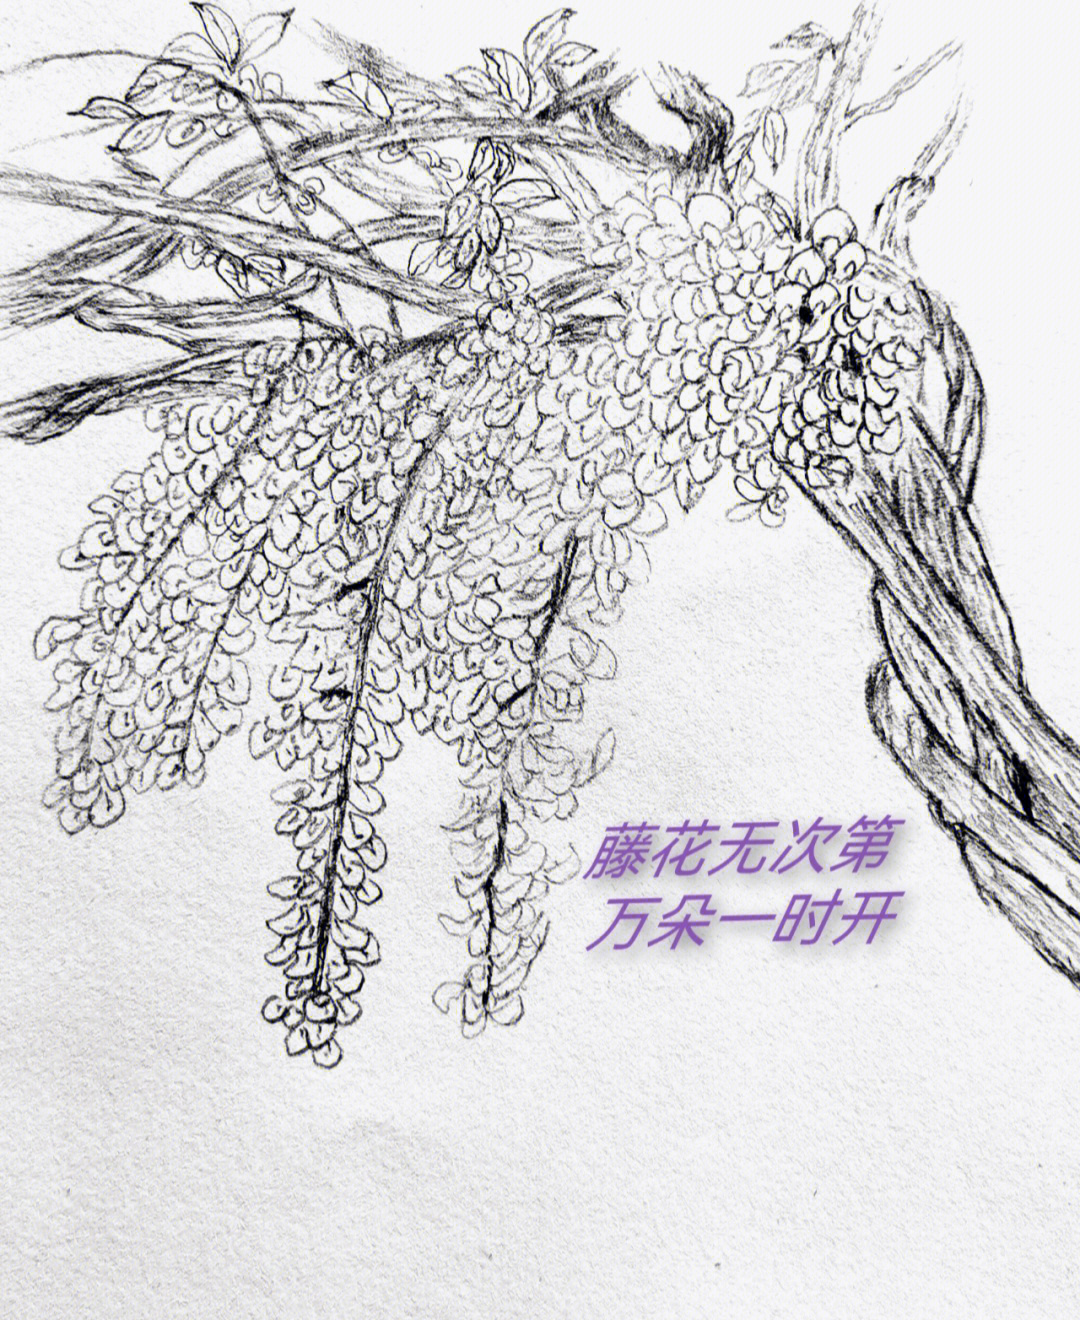 紫藤花种子简笔画图片